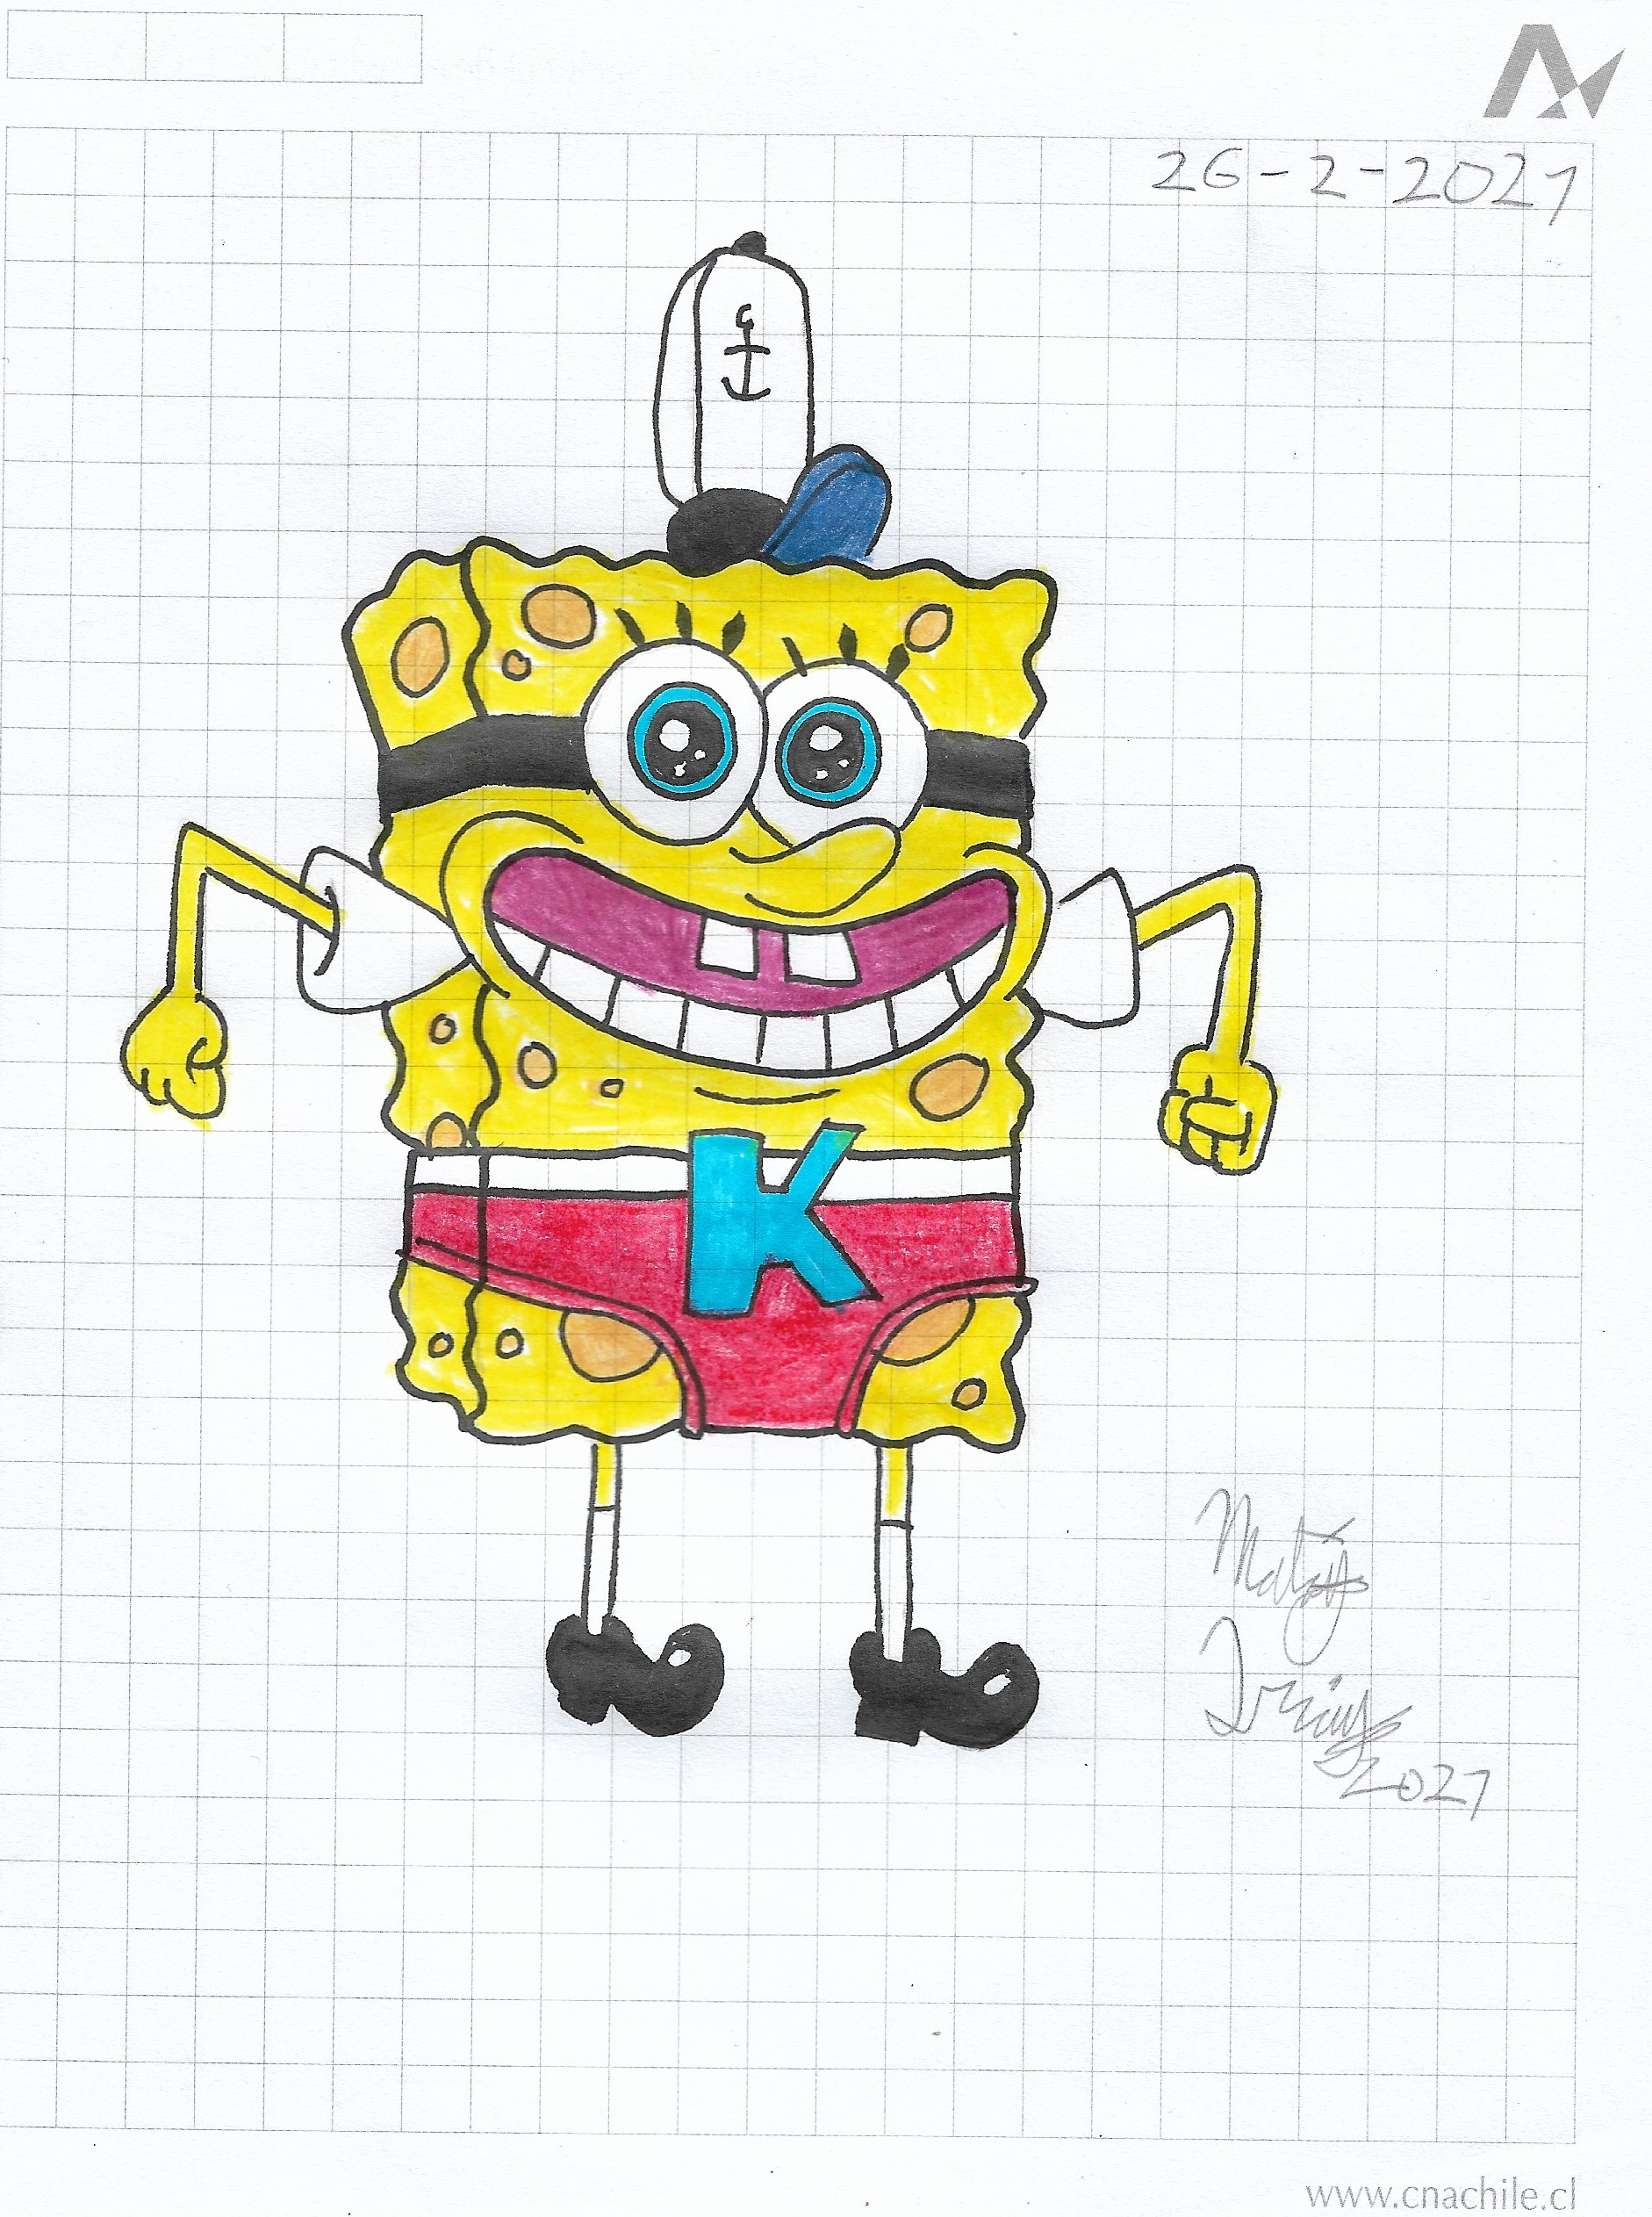 Super SpongeBob with red underwear by matiriani28 on DeviantArt